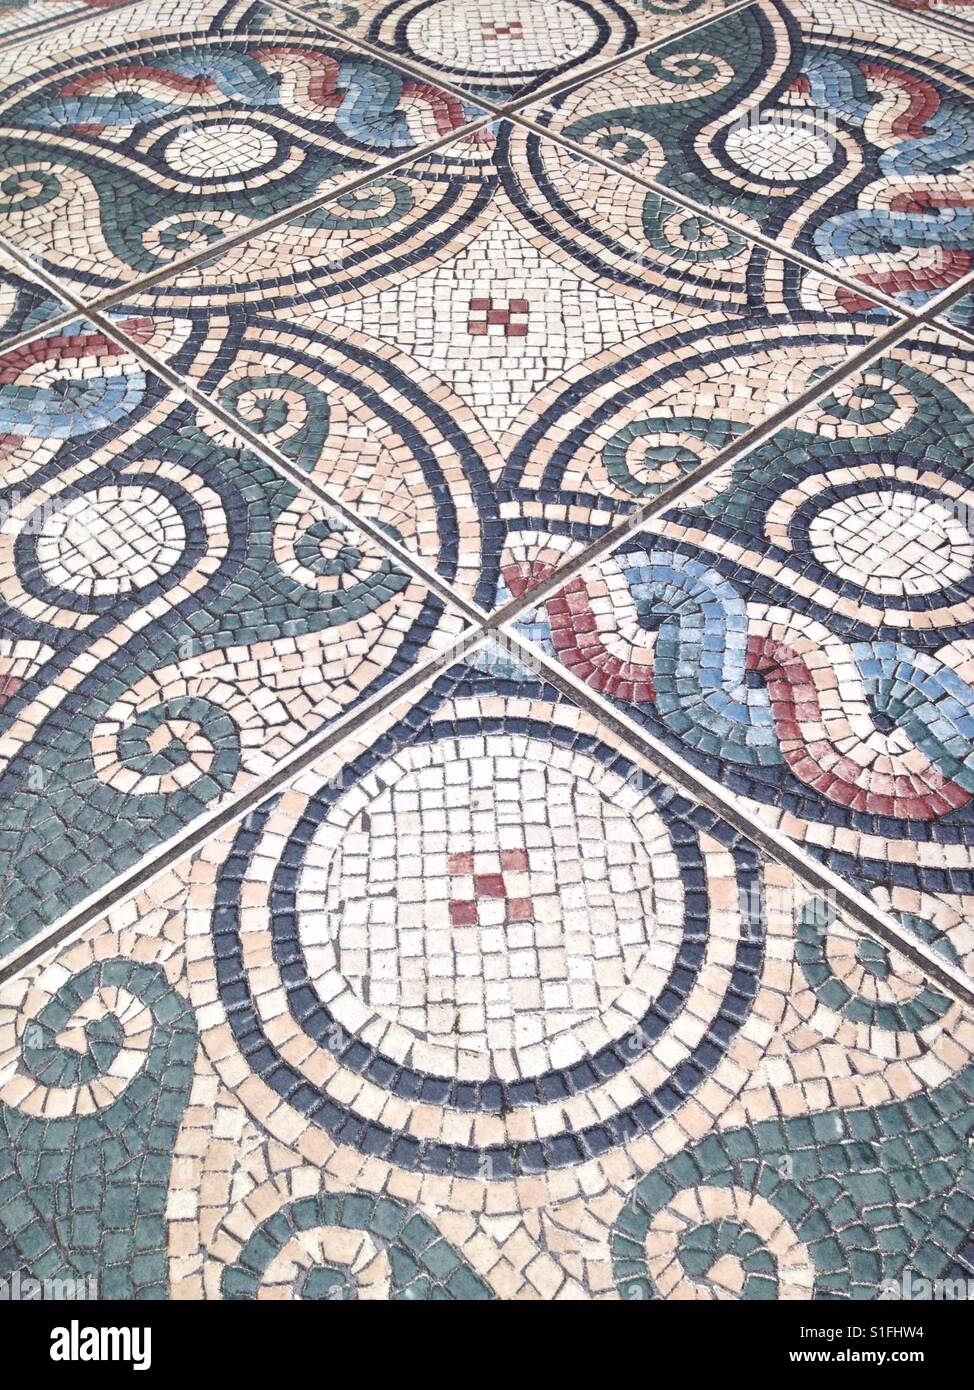 Mosaik-Fliesen auf einem öffentlichen Gehweg. Cheshire, England. Stockfoto